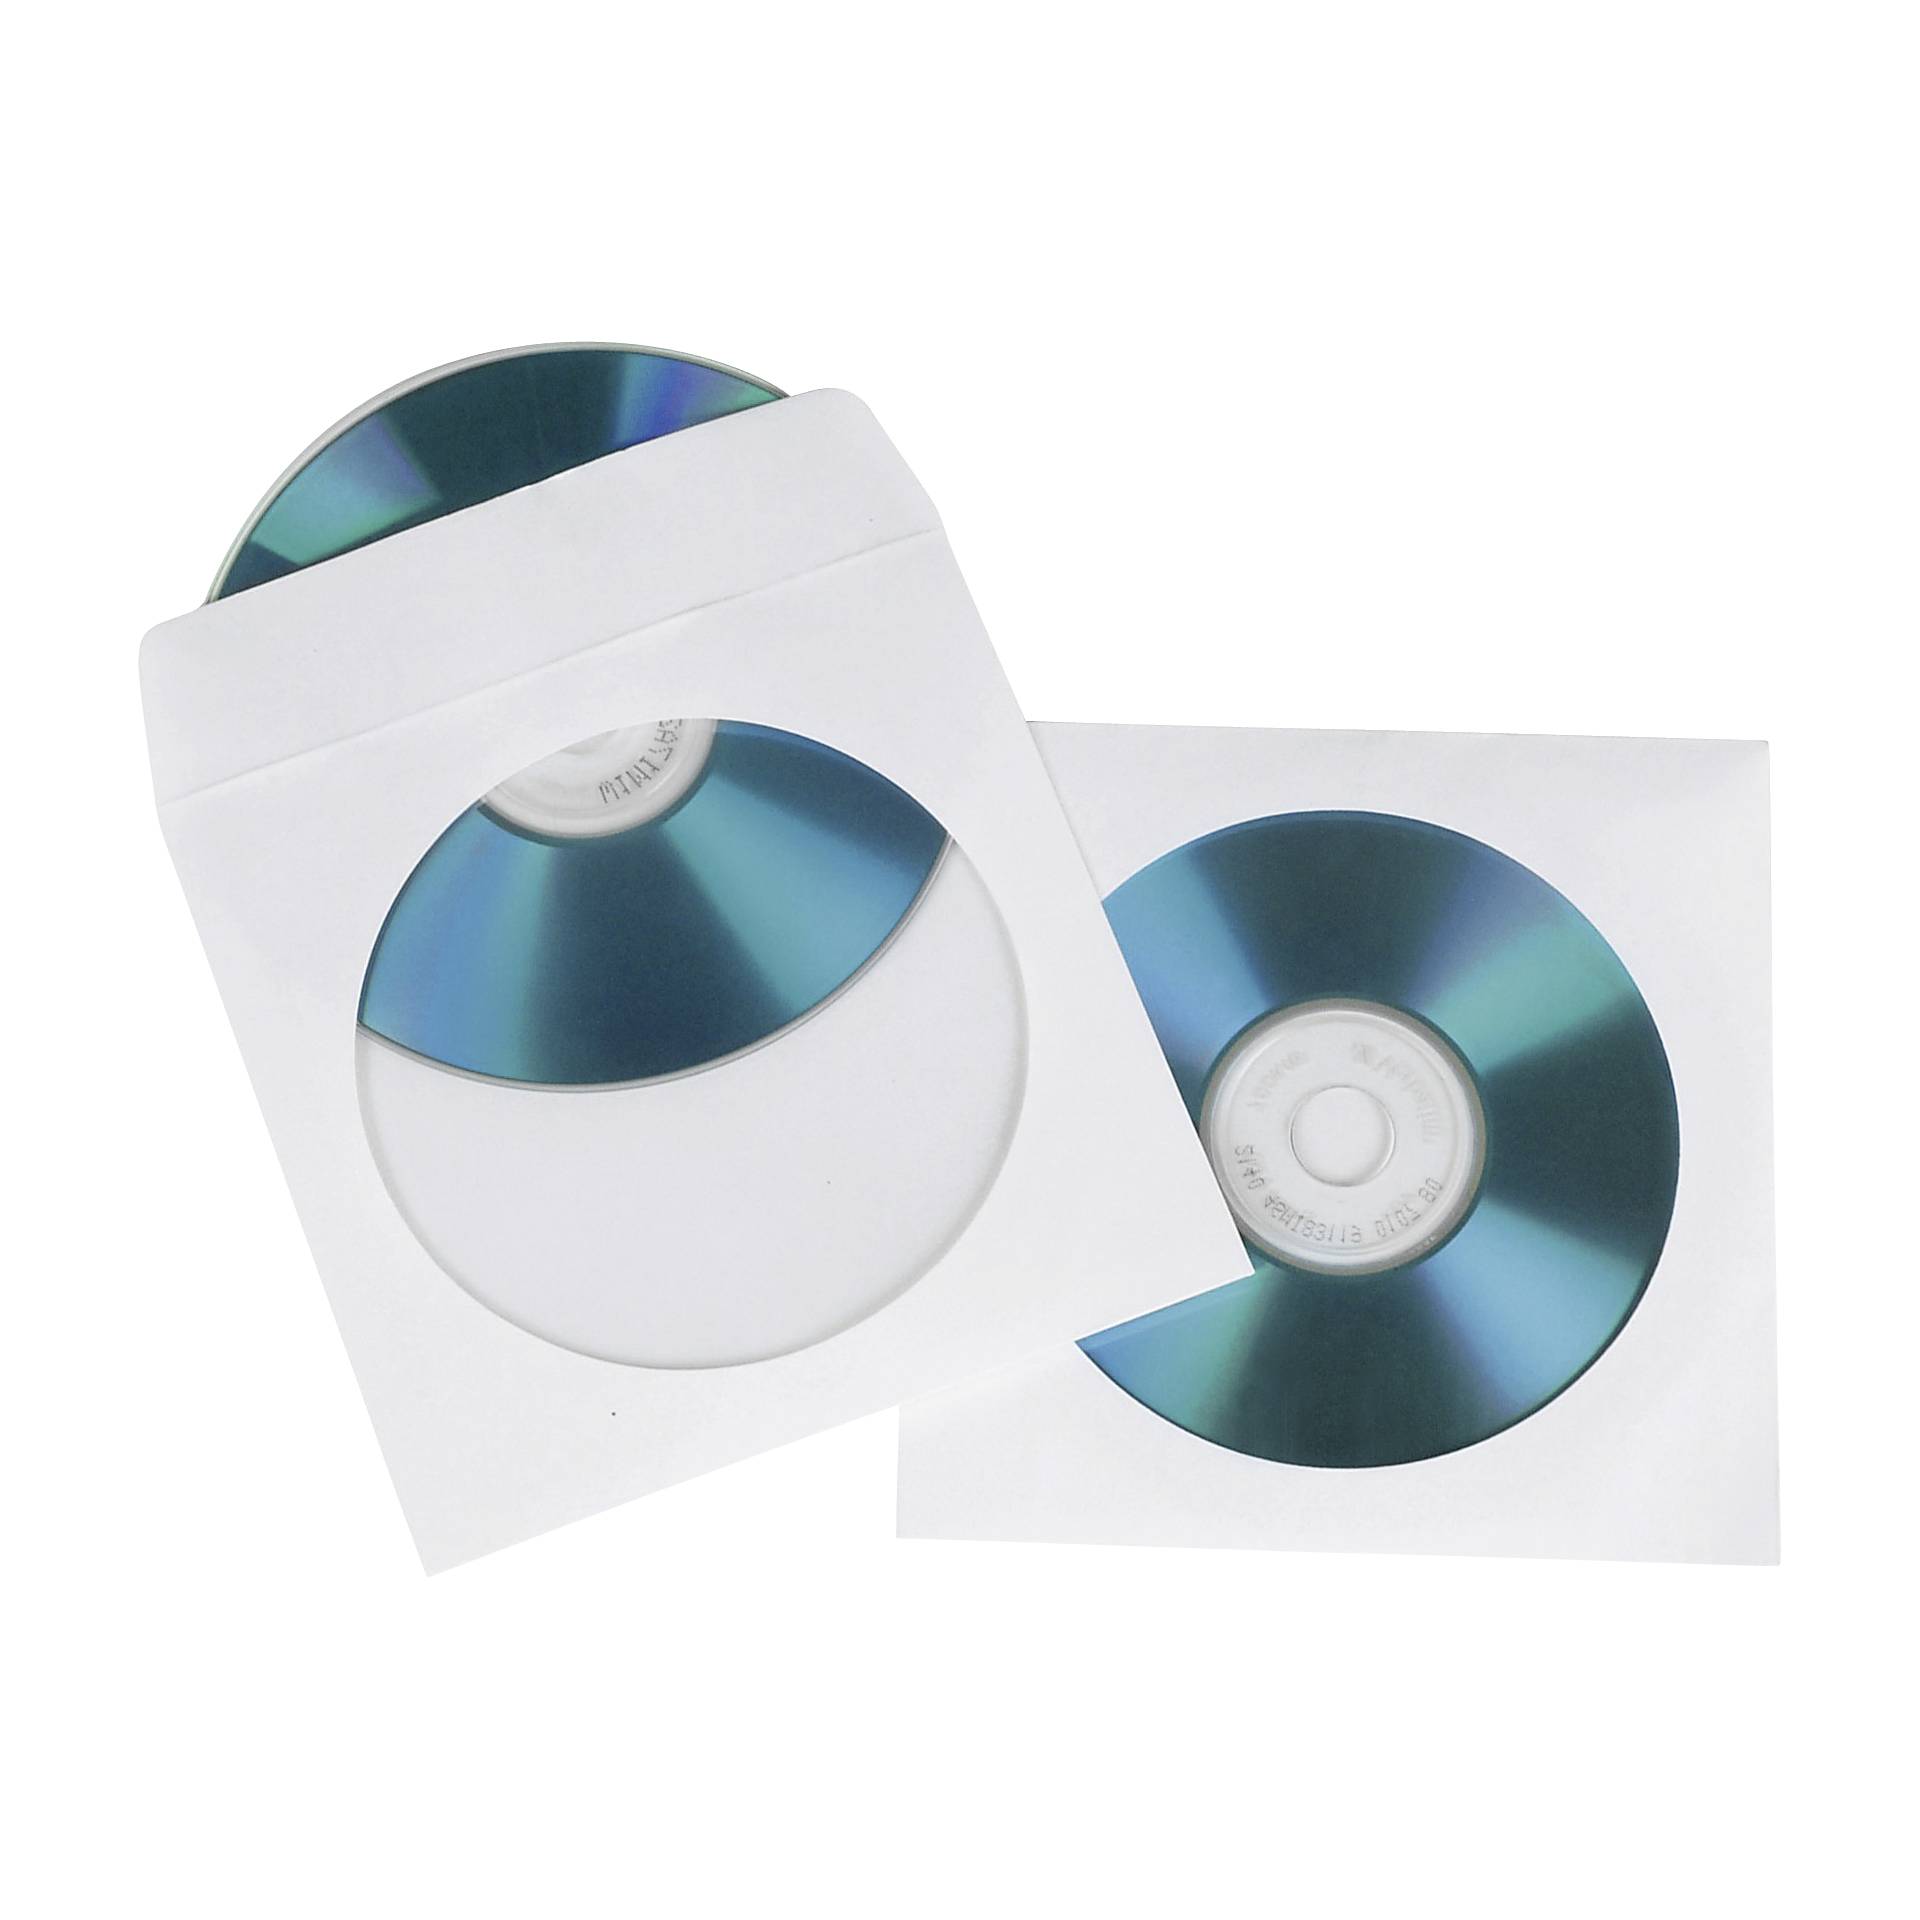 1x100 Hama CD/DVD custodie in carta in bianco         SK 511